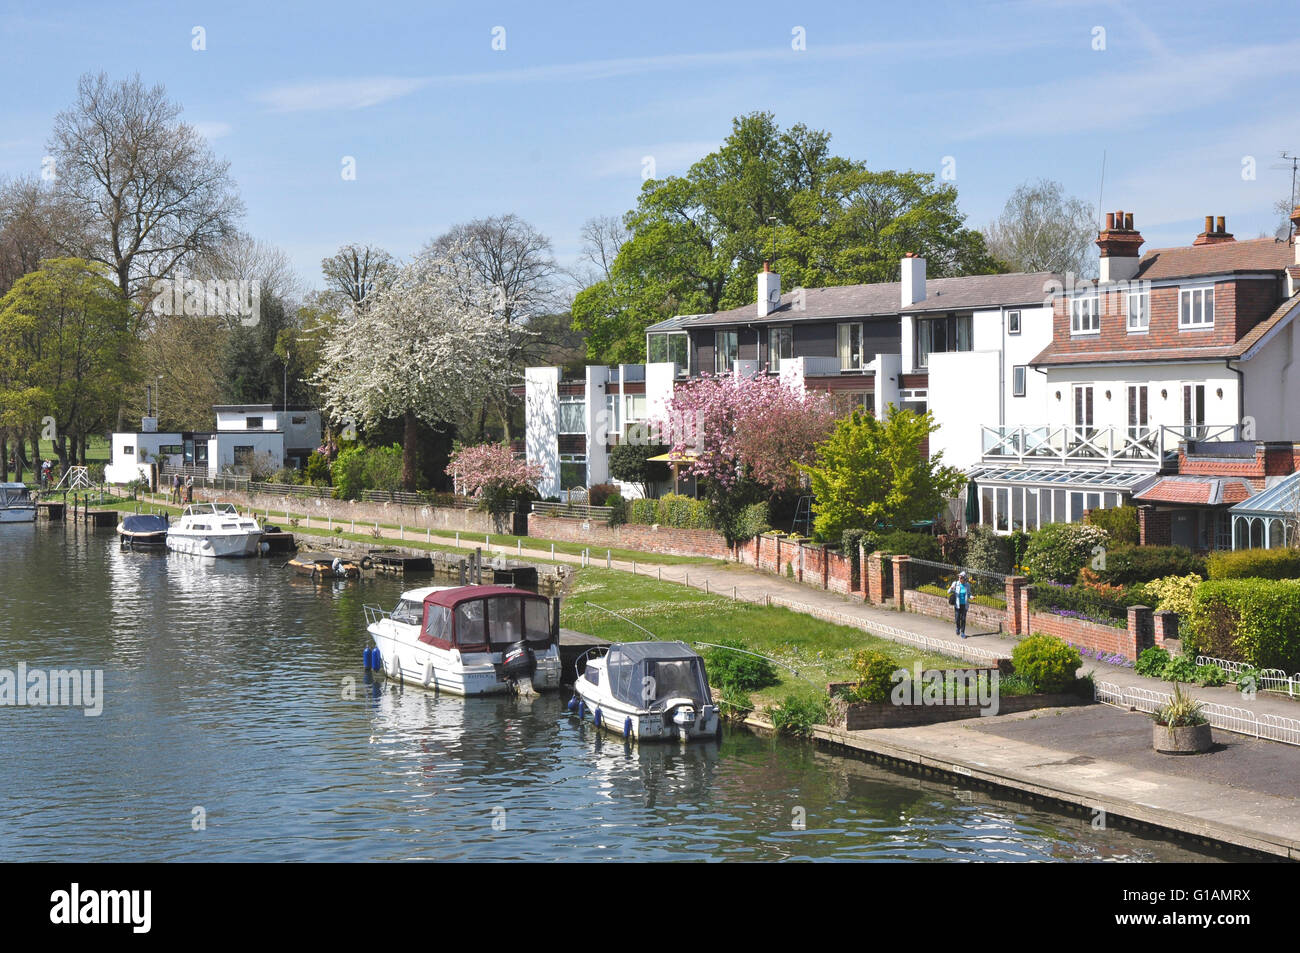 Argent - Marlow - la promenade Riverside - maisons d'époque - arbres fleuris - bateaux amarrés - reflets du soleil de printemps Banque D'Images